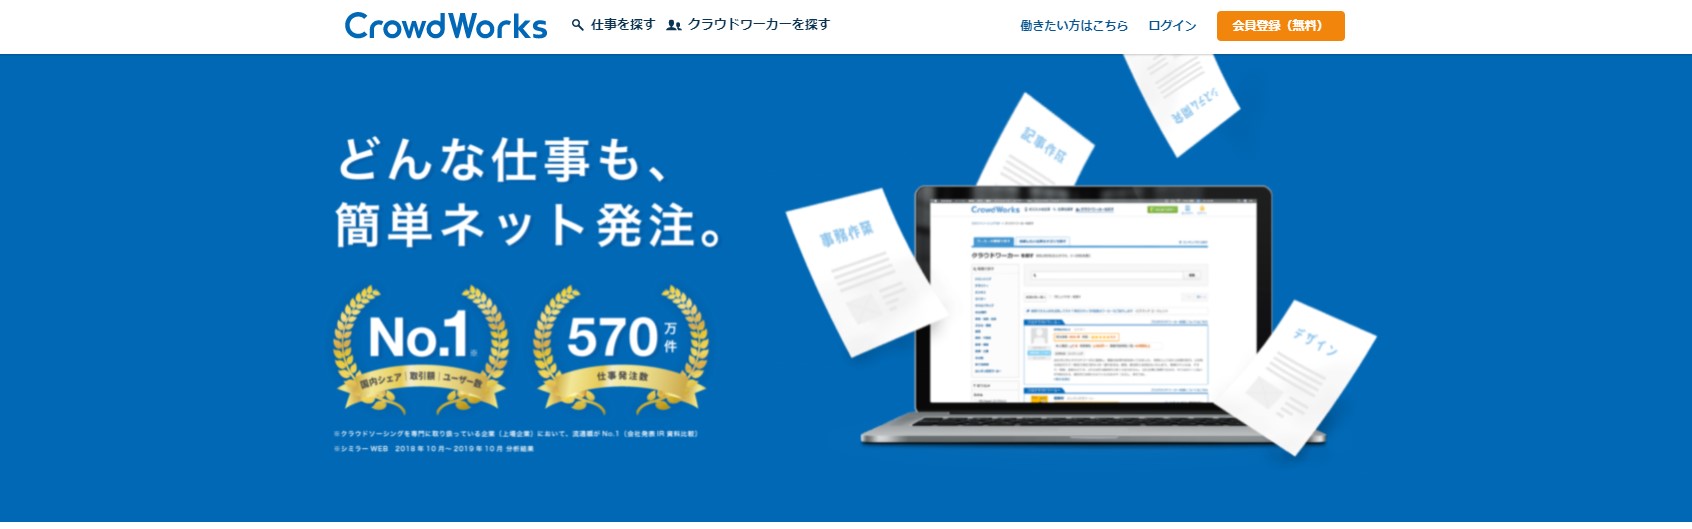 クラウドソーシングは日本最大の「クラウドワークス」